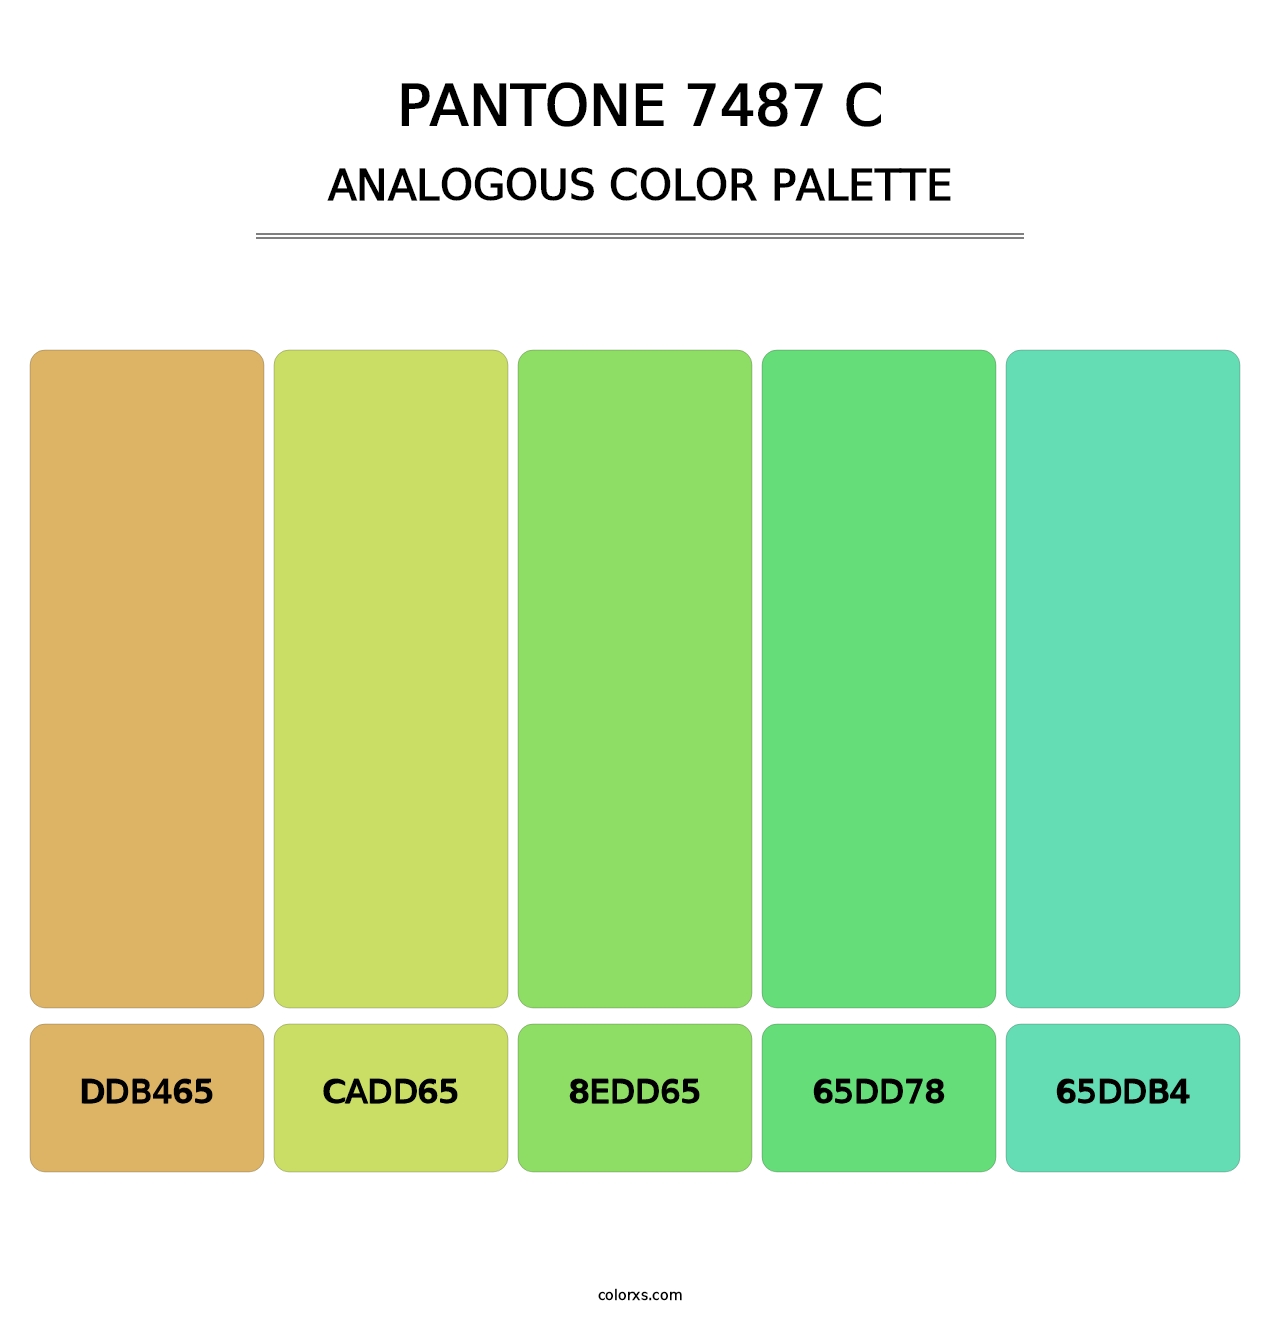 PANTONE 7487 C - Analogous Color Palette